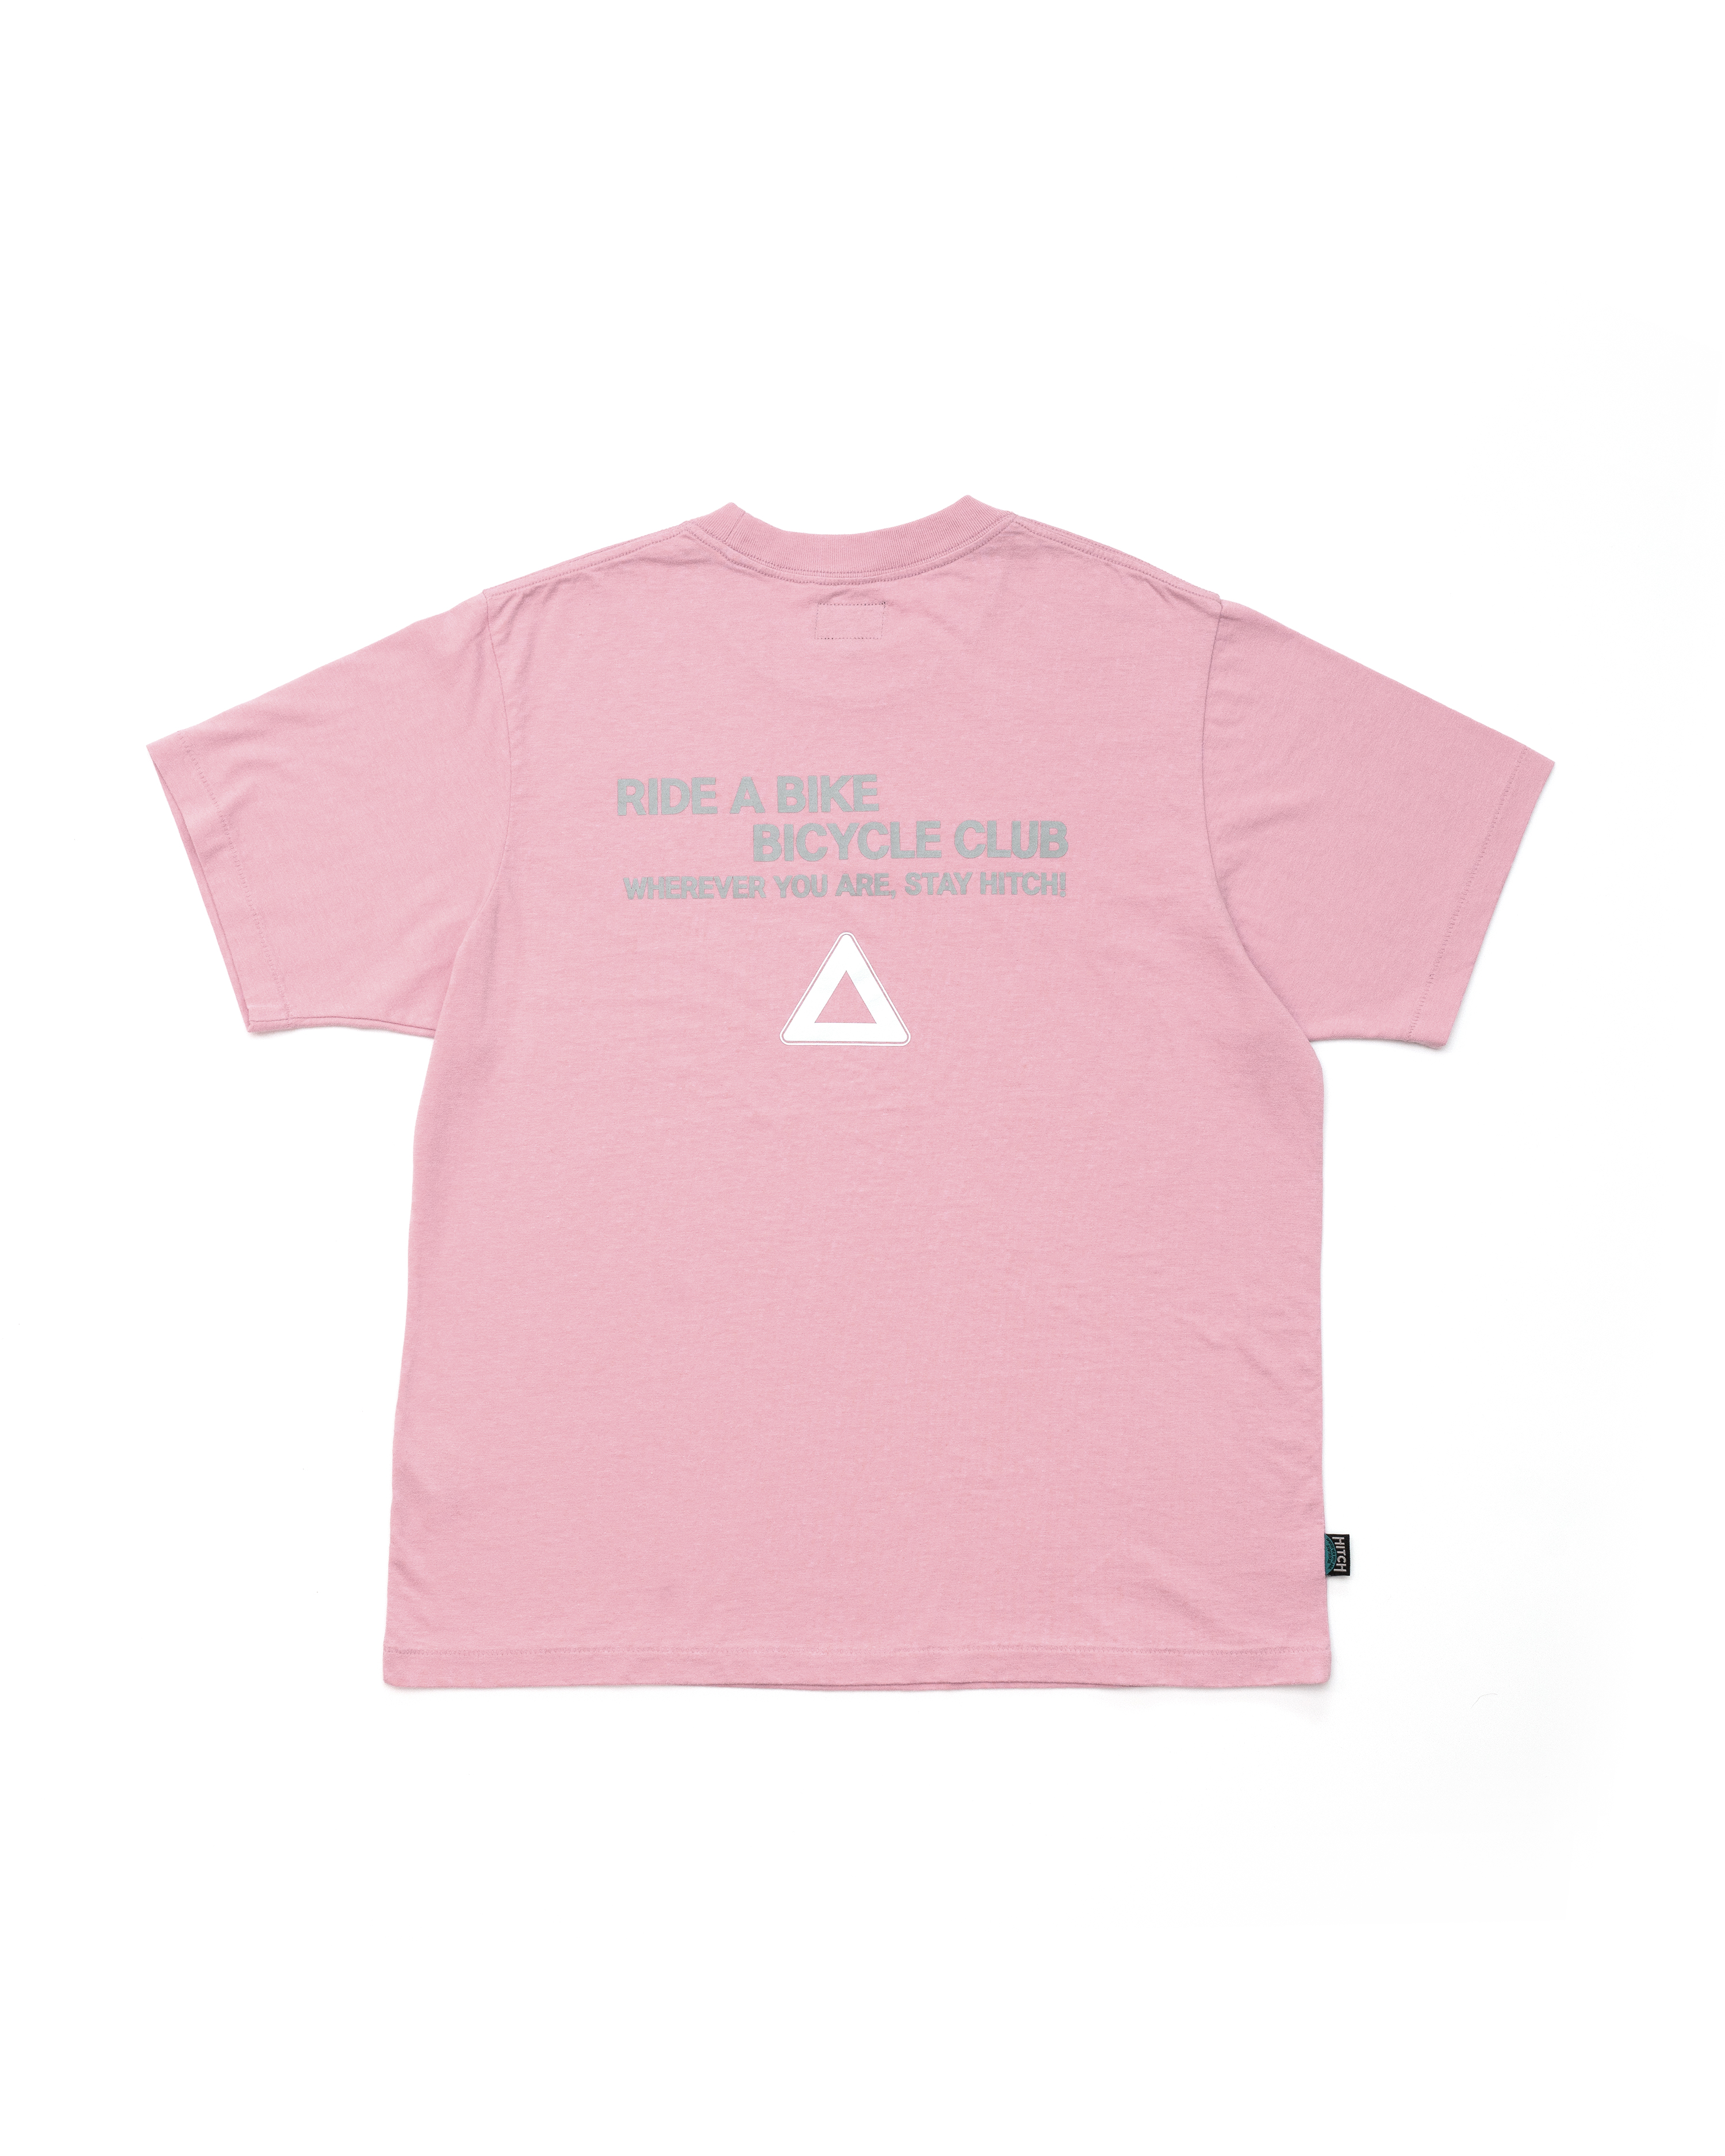 [Restock] HBC reflector Tee - pink